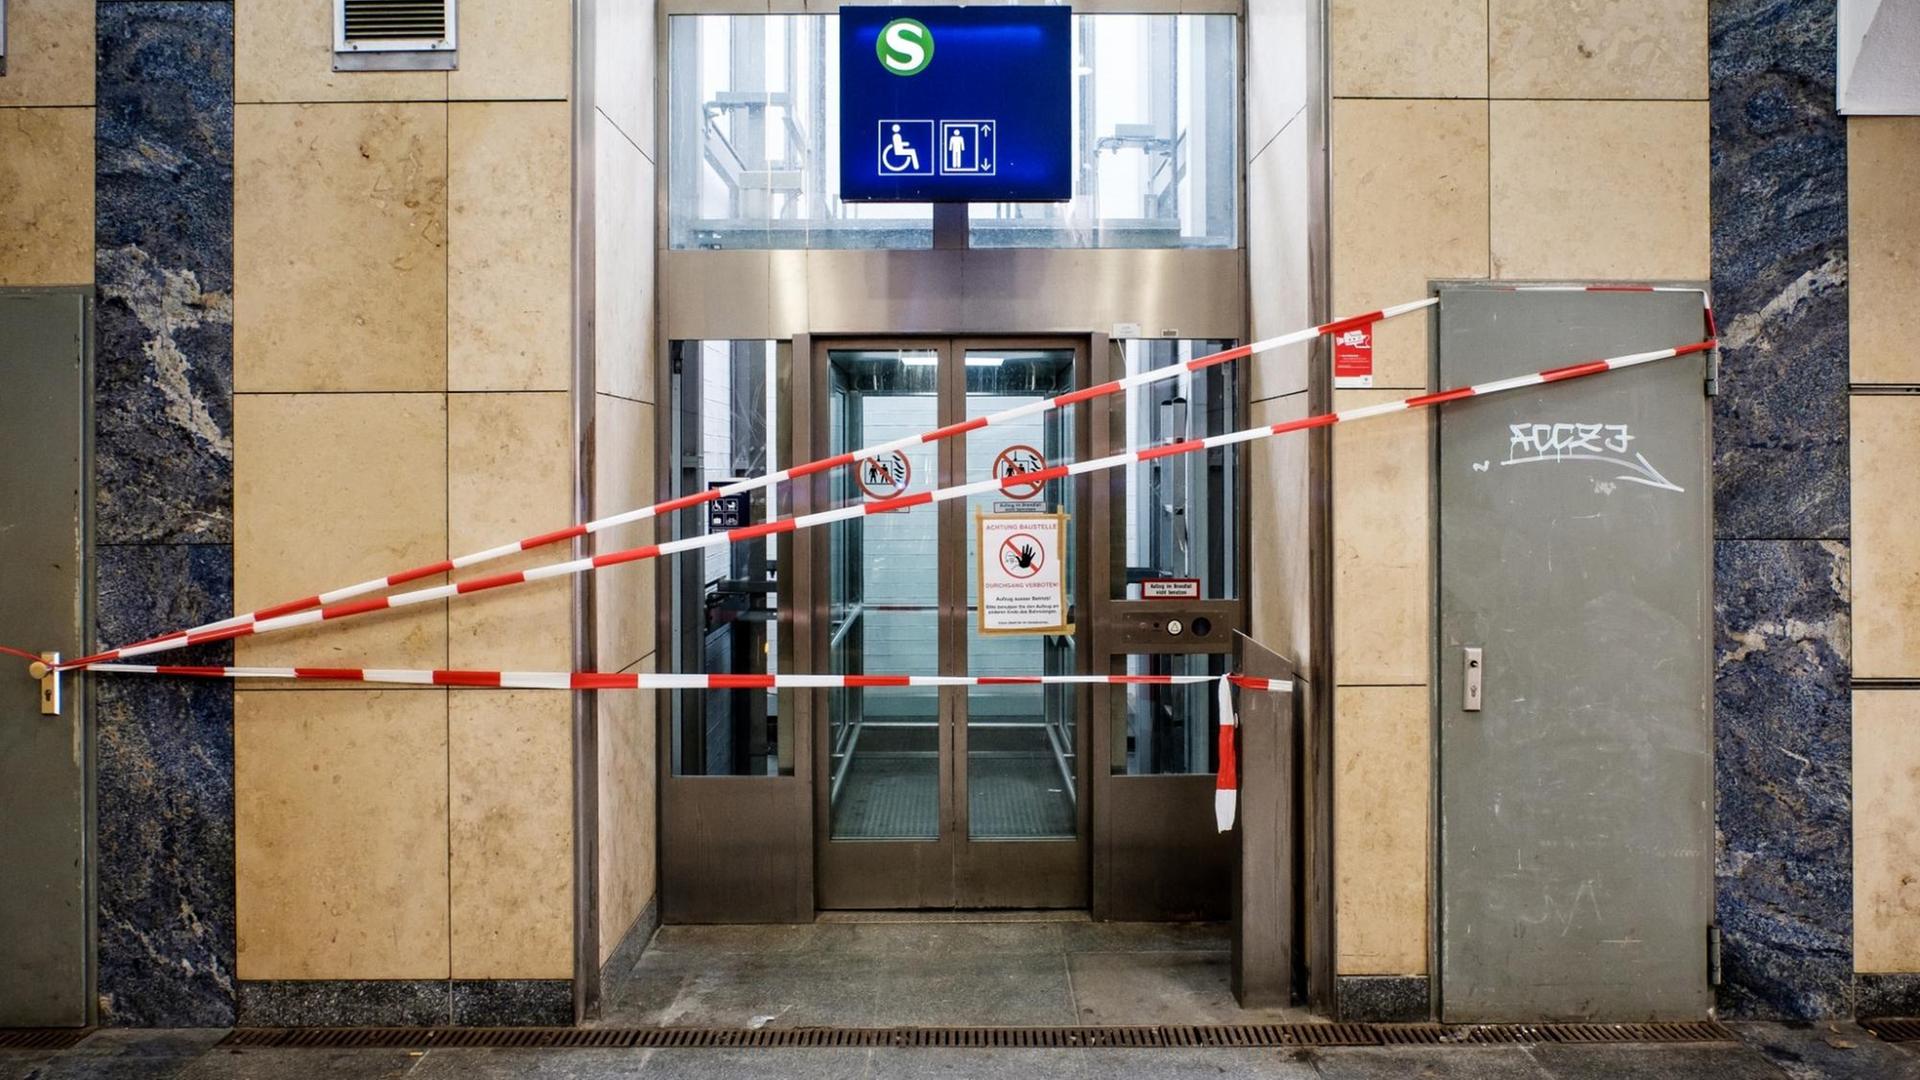 Absperrband vor einem Aufzug in der Berliner S-Bahn.